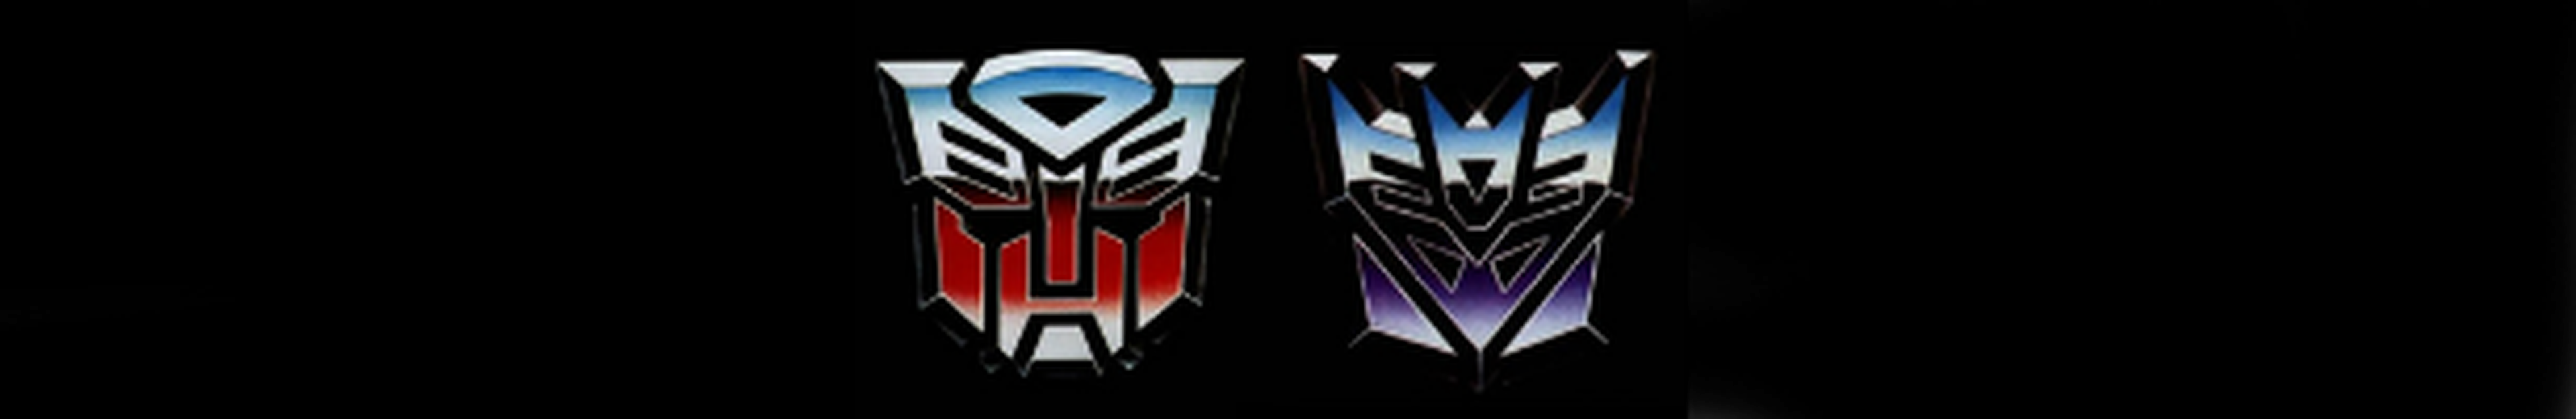 Los mejores juegos de Transformers